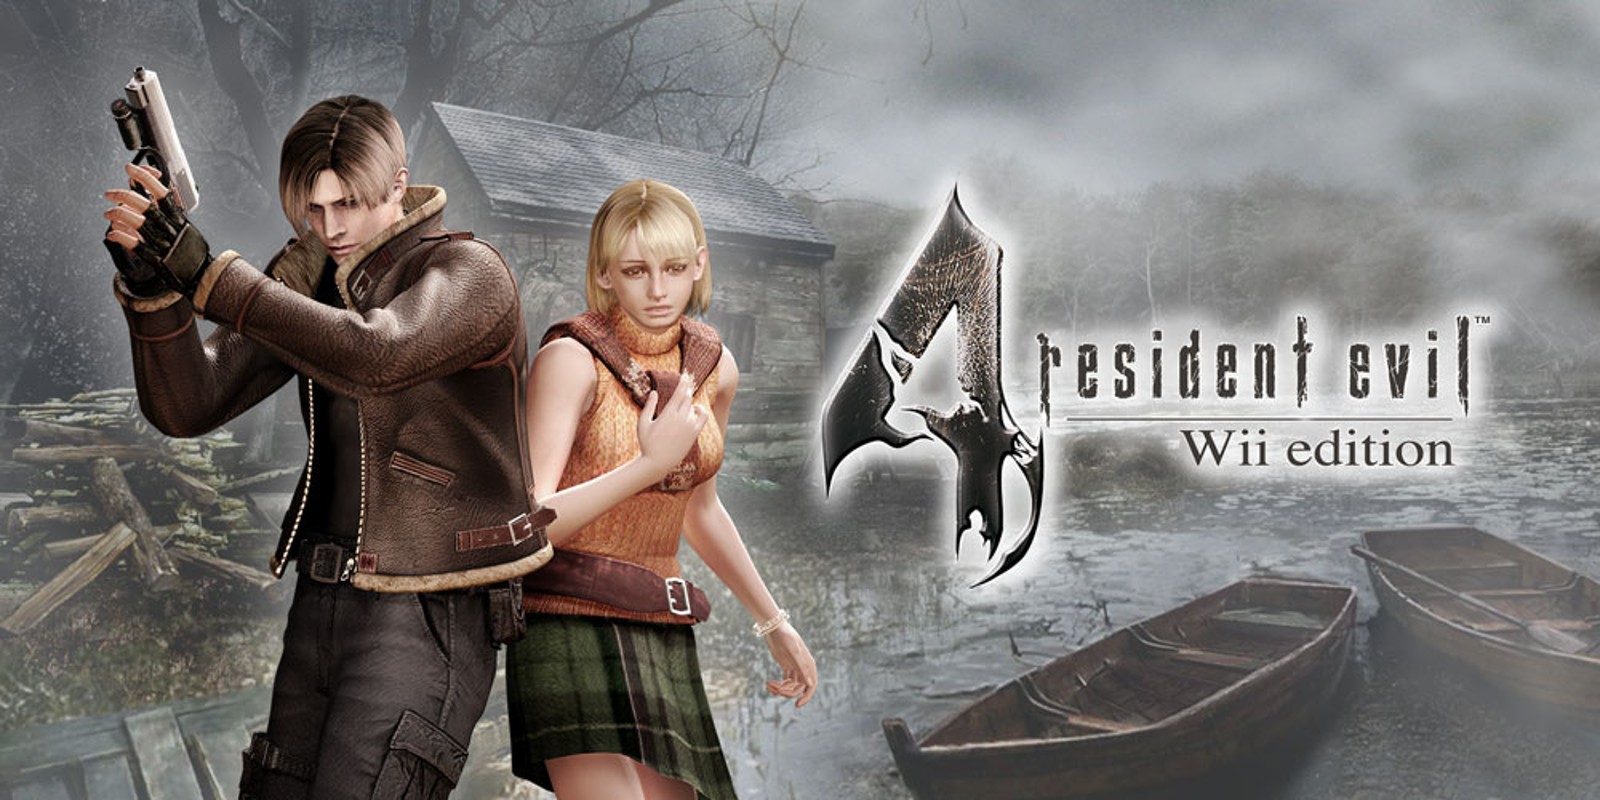 Прохождение игры Resident Evil 4 - Ultimate HD Edition # 25 (Русская версия игры) PC - Ver. HD Full.